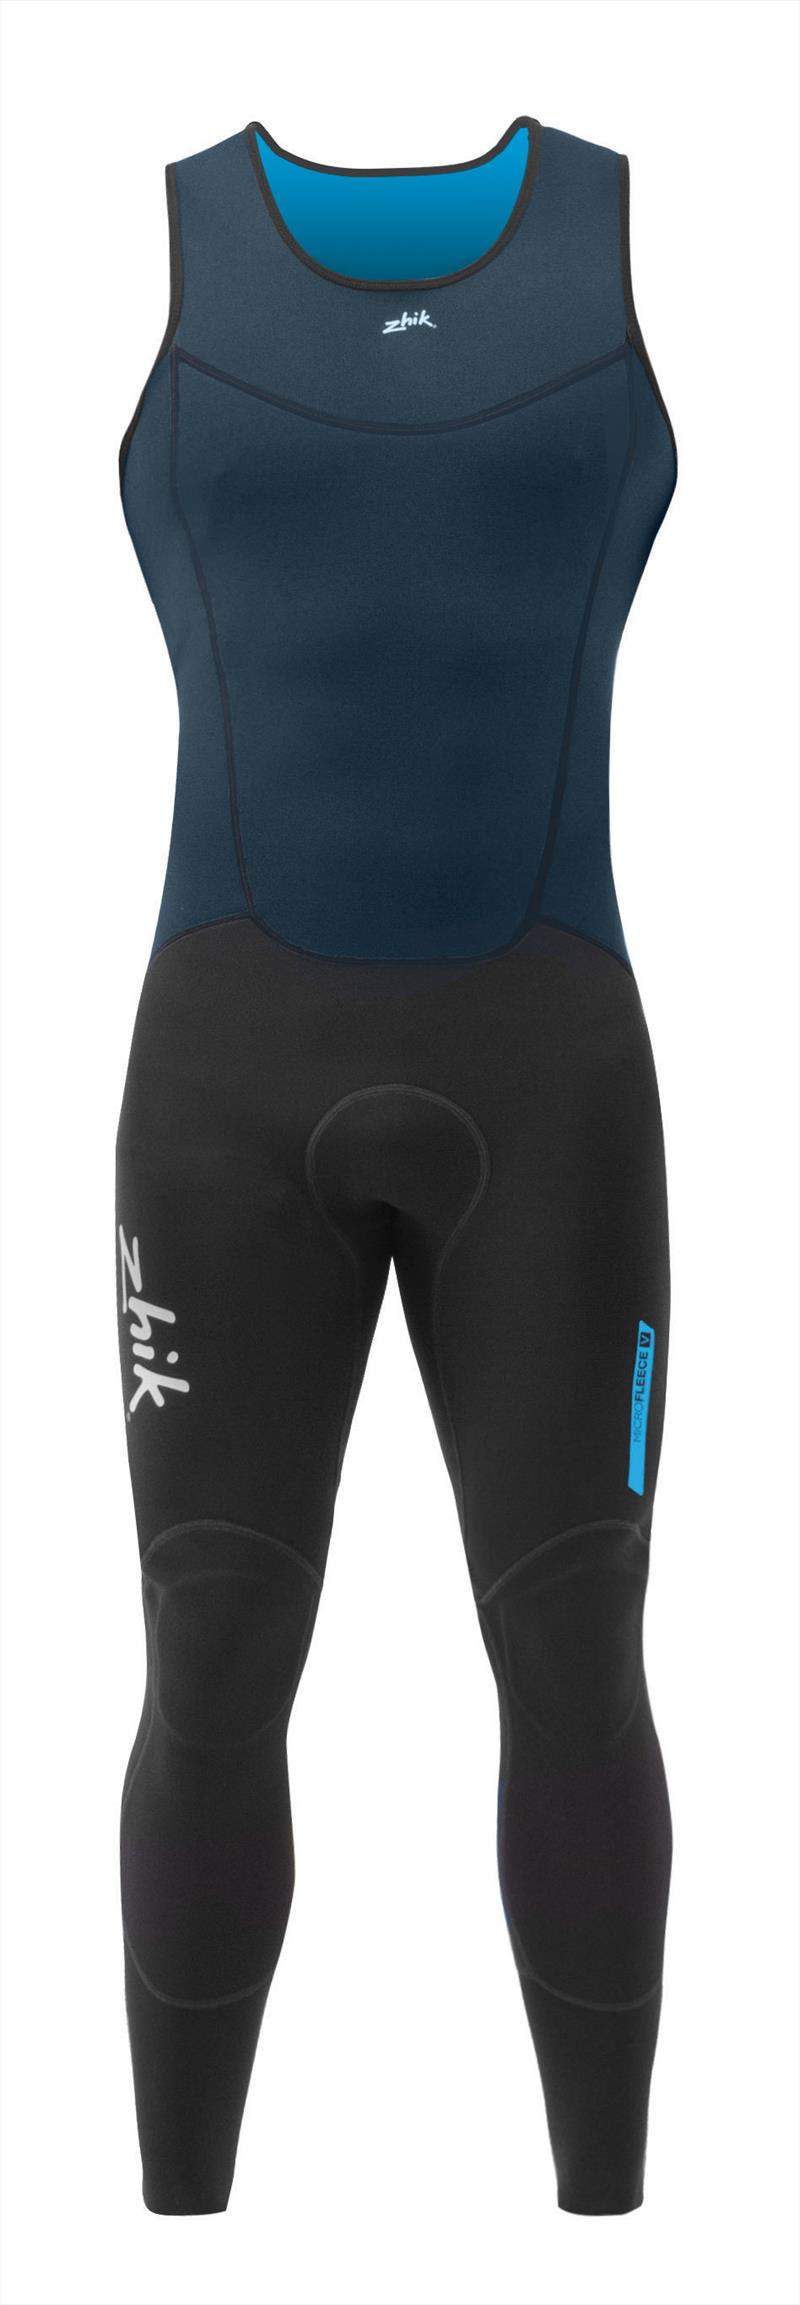 Get set for summer in Zhik's new Microfleece wetsuit